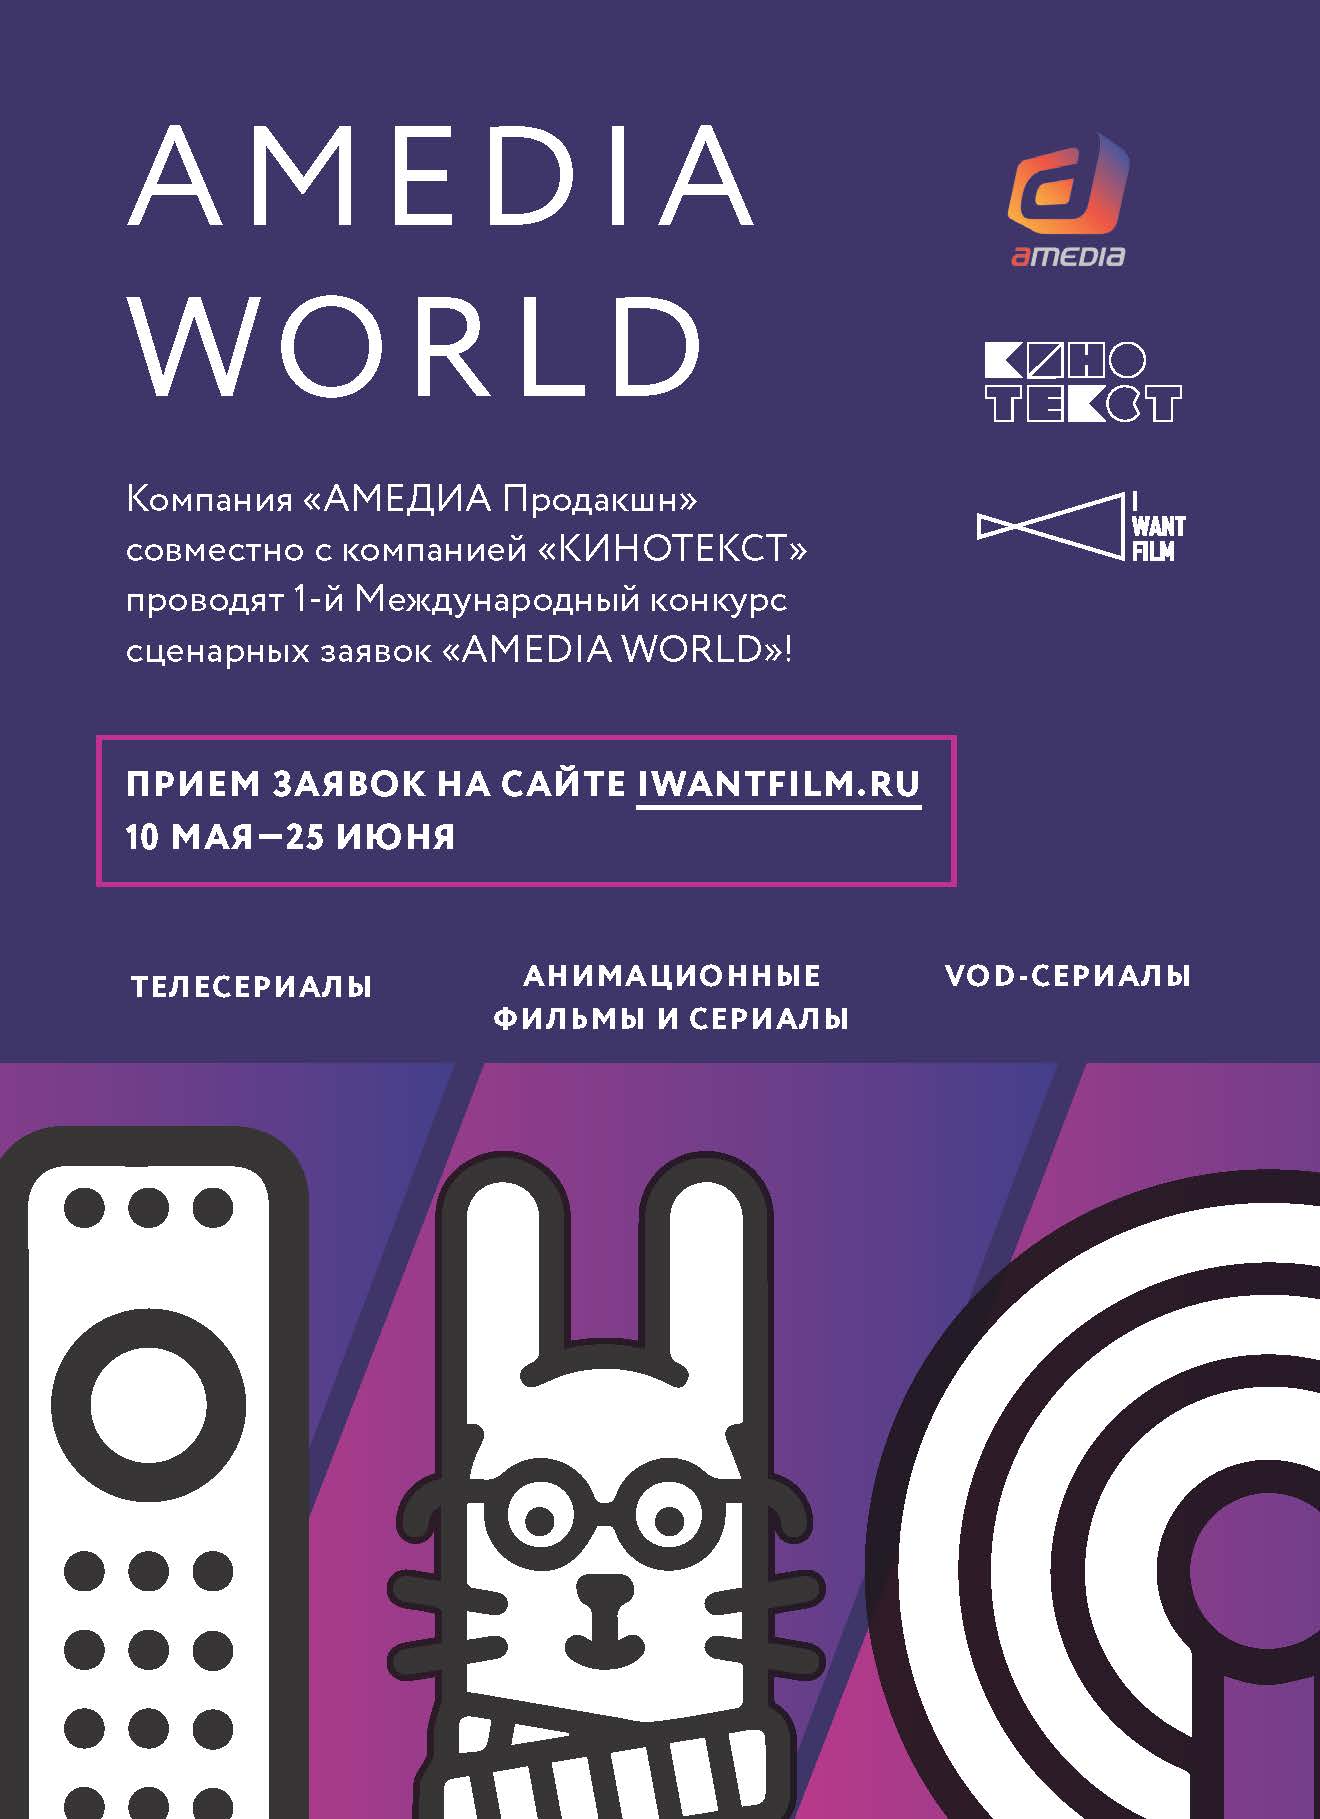 Объявлены имена финалистов I-ого Международного сценарного конкурса AMEDIA WORLD